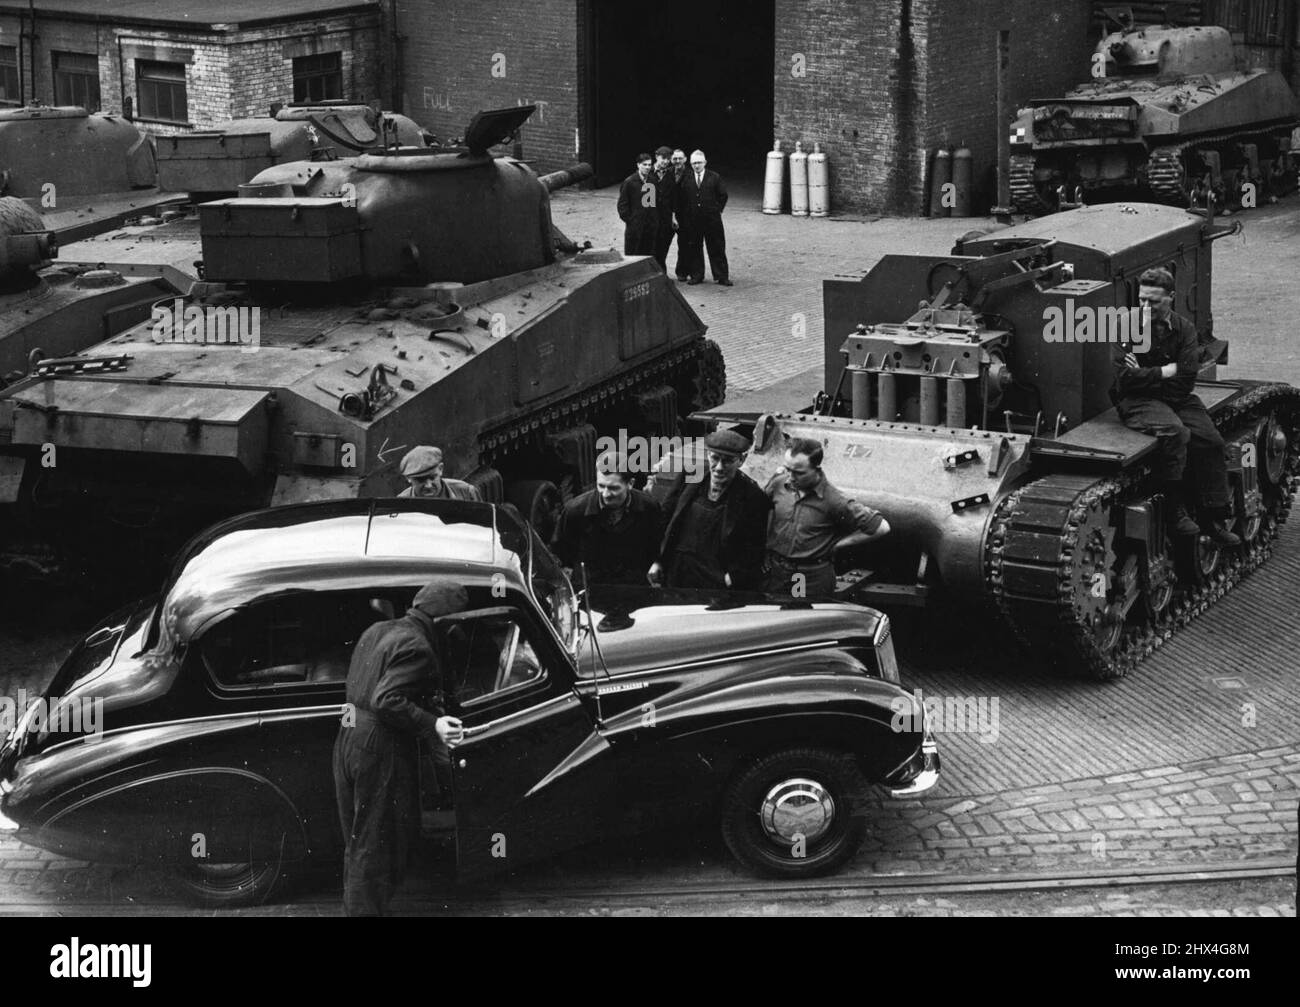 Dieses neue britische Auto wurde in eine Fabrik in Elswick, Newcastle-on-Tyne, geschickt, damit die Arbeiter die Art von Exportmodellen sehen konnten, zu deren Herstellung sie beigetragen haben. Eine in ihrem Werk produzierte 120-Tonnen-Presse stanzt nun stromlinienförmige Karosserien für das Auto. Im Hintergrund ist ein Sherman-Panzer, der noch bewaffnet ist und in einen schweren Bulldozer verwandelt wird. 27. Juli 1948. (Photo by Mirror Features). Stockfoto